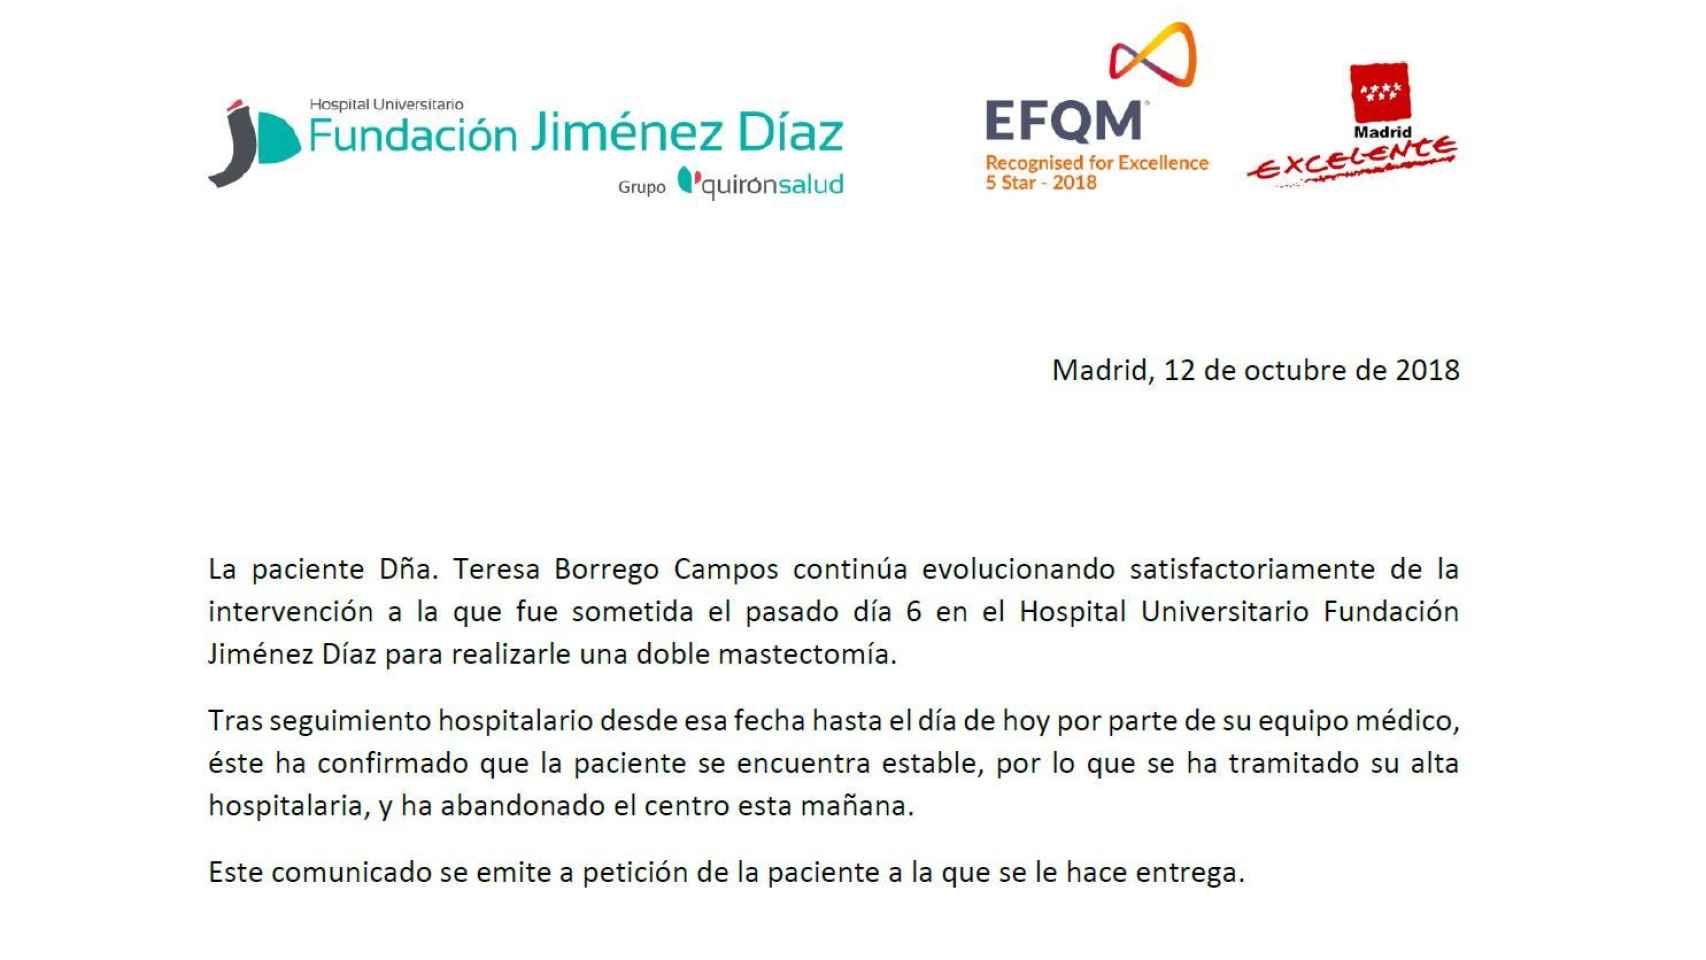 Comunicado emitido por la Fundación Jiménez Díaz.